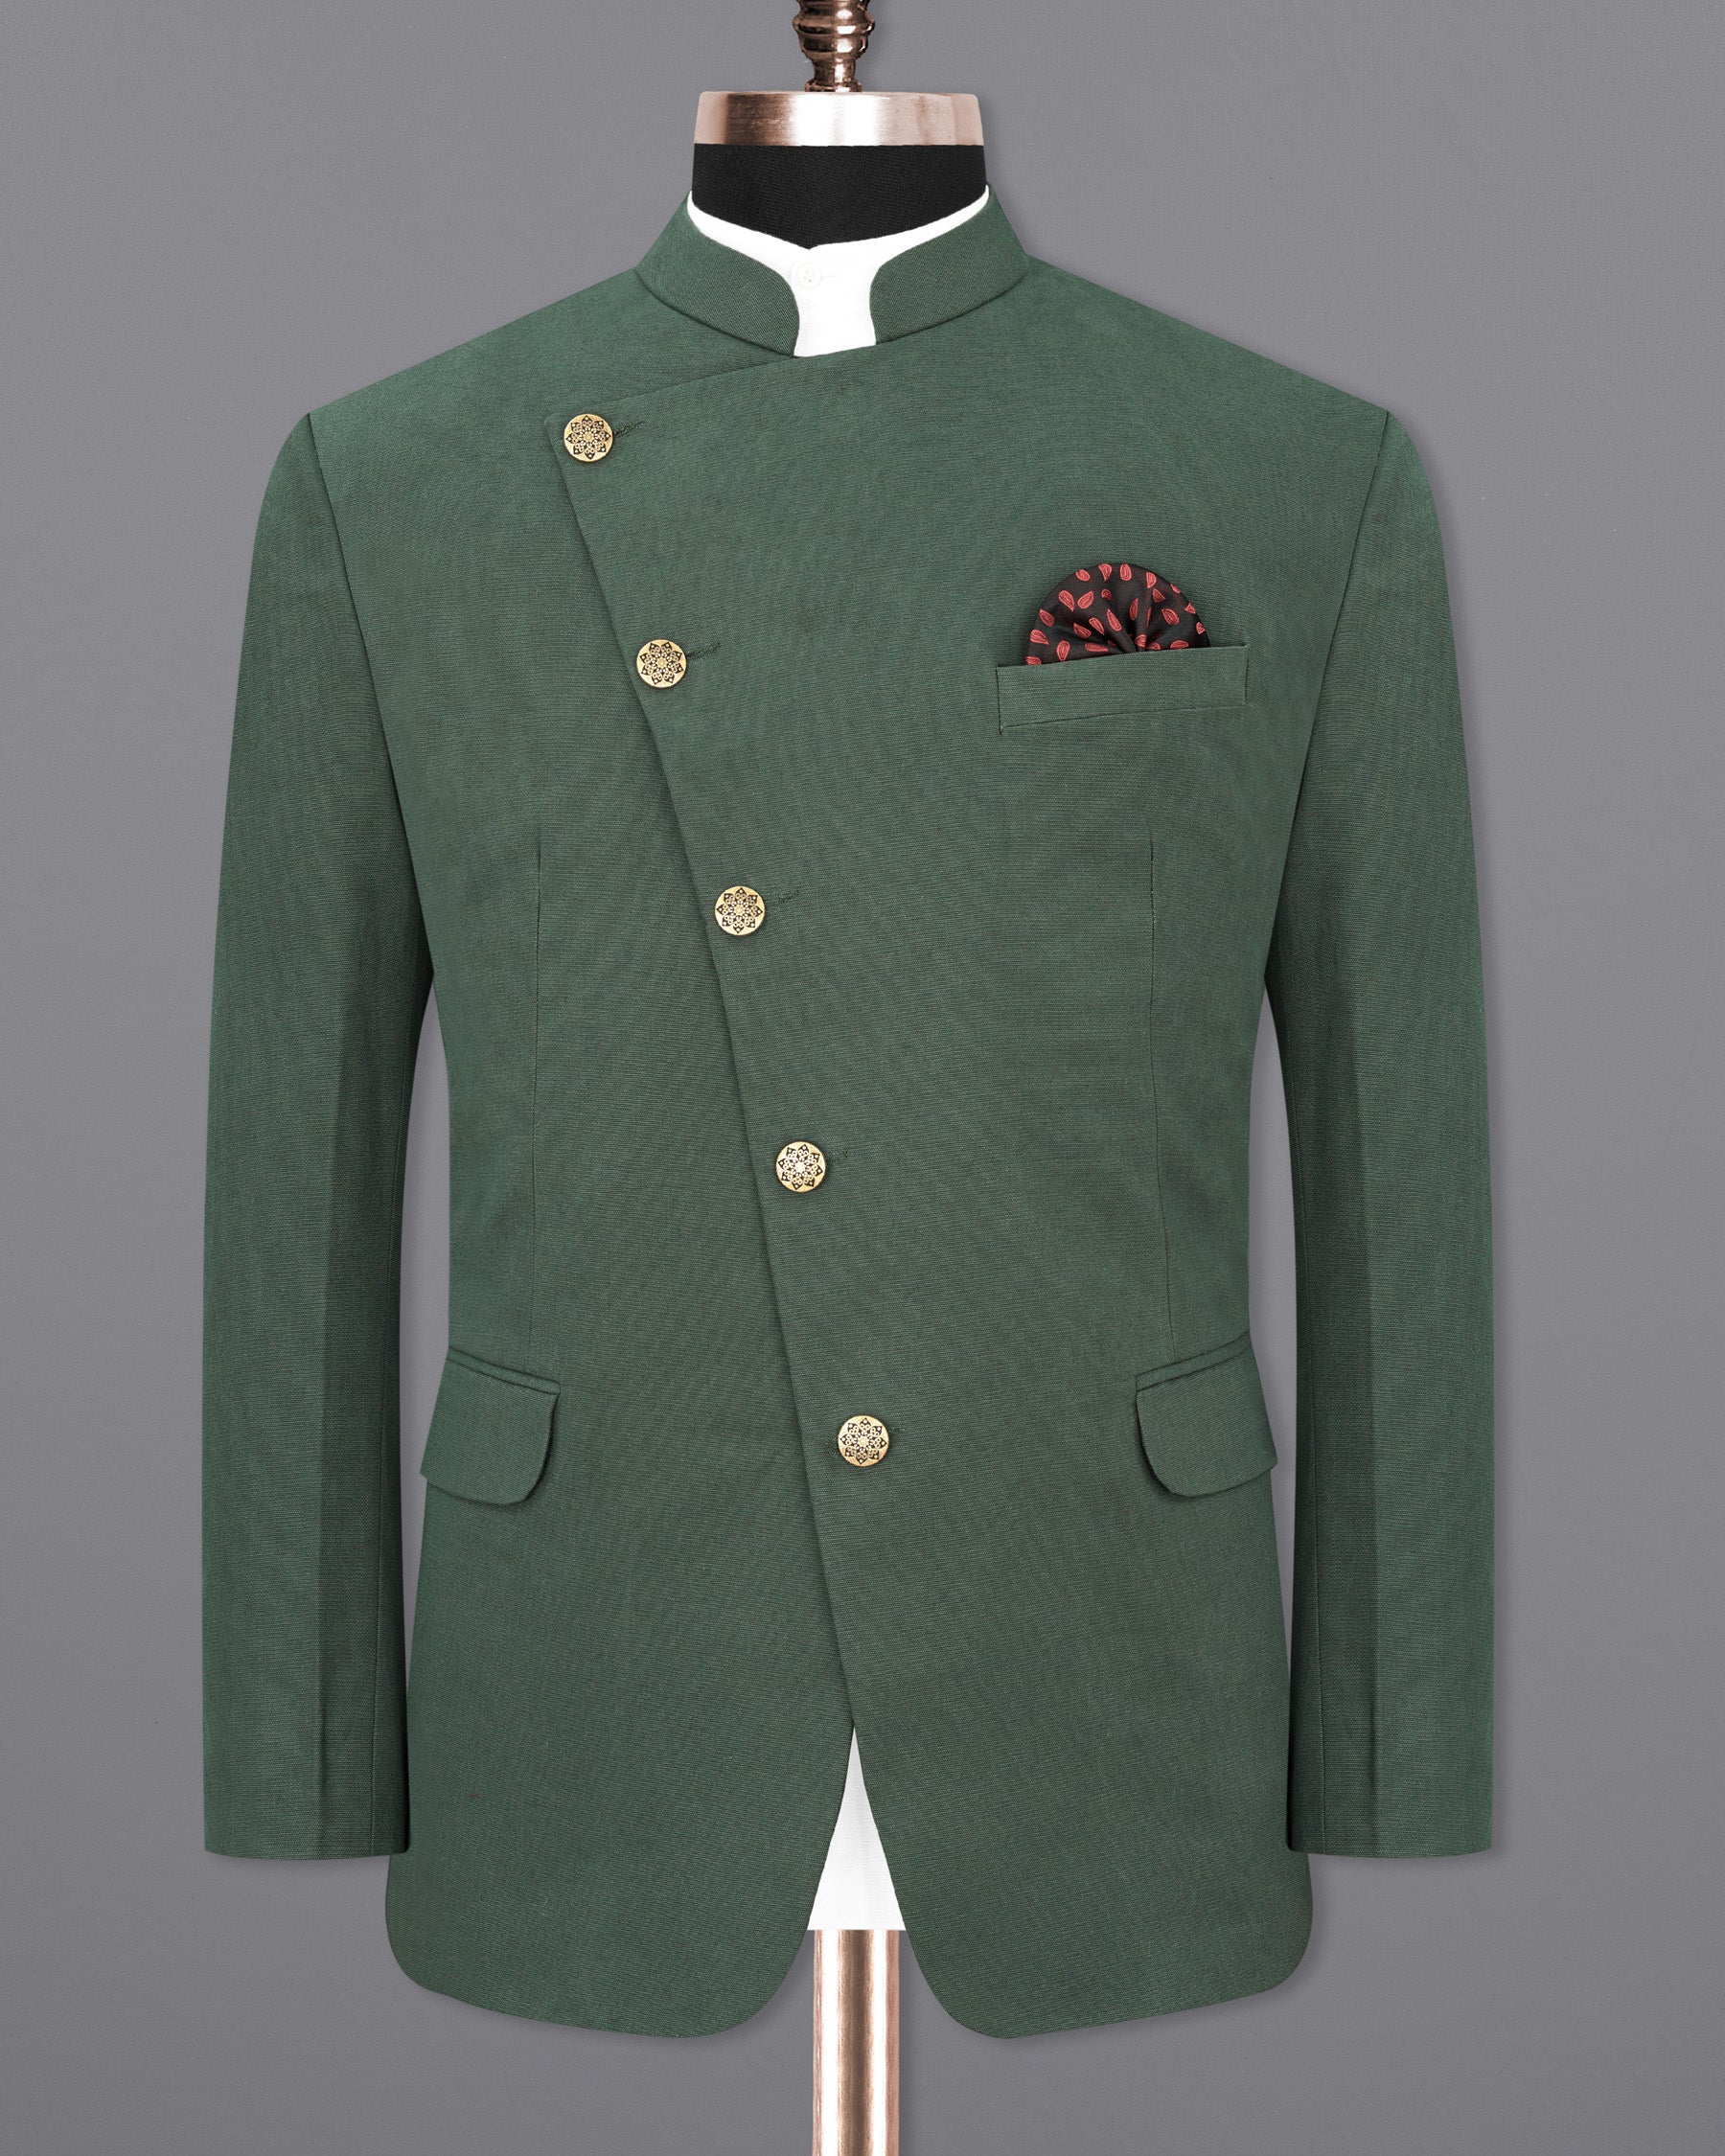 Asparagus Green Cross Placket Premium Cotton Bandhgala Suit